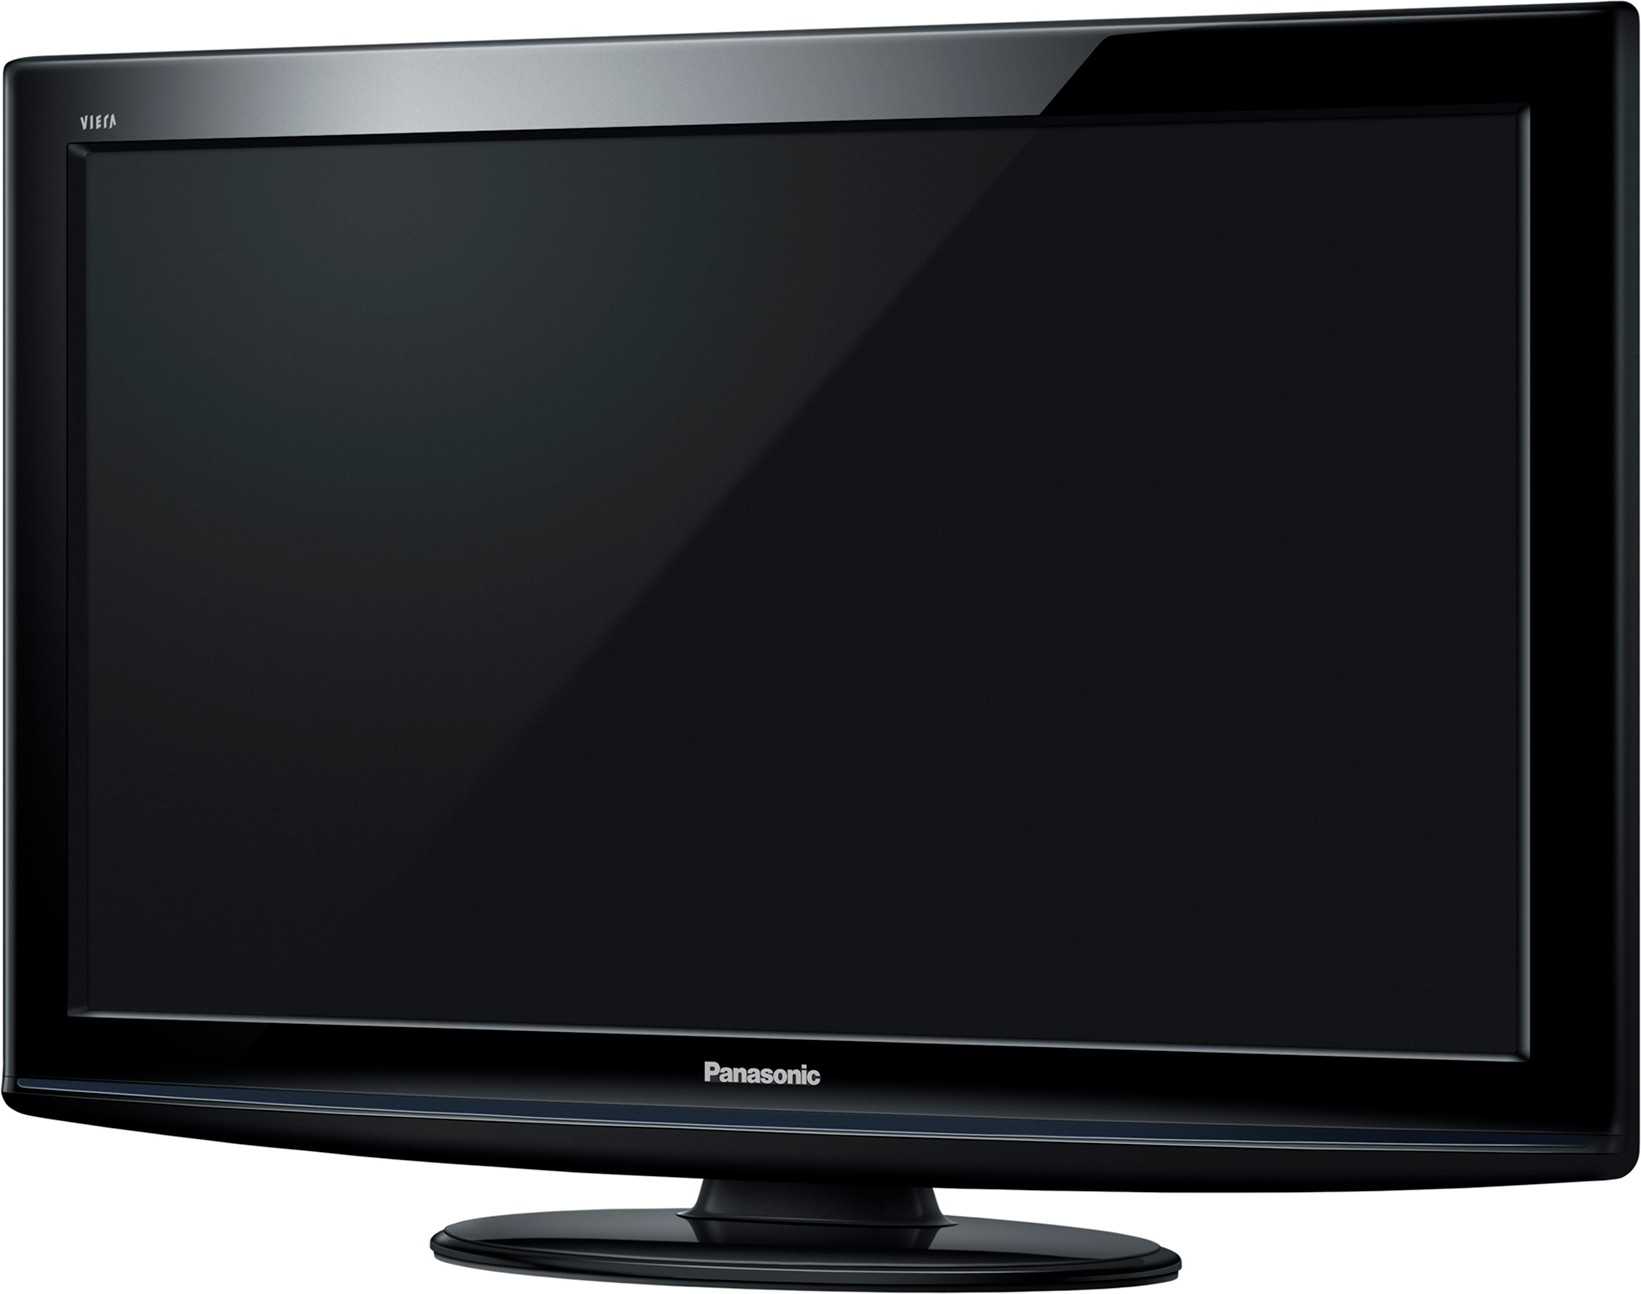 Телевизор Panasonic TX-L42DT50 - подробные характеристики обзоры видео фото Цены в интернет-магазинах где можно купить телевизор Panasonic TX-L42DT50